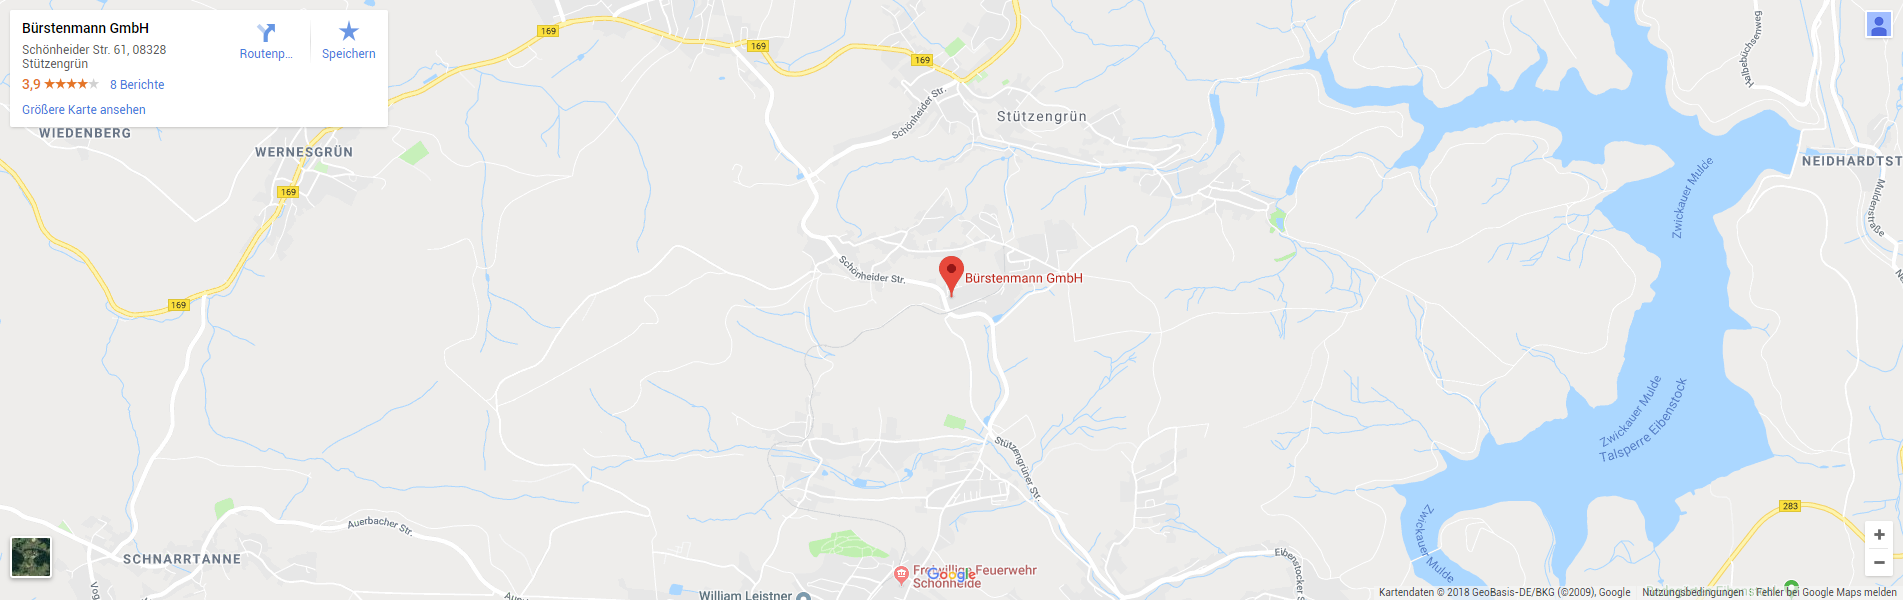 Bürstenmann GmbH: Anfahrt (Google Maps)